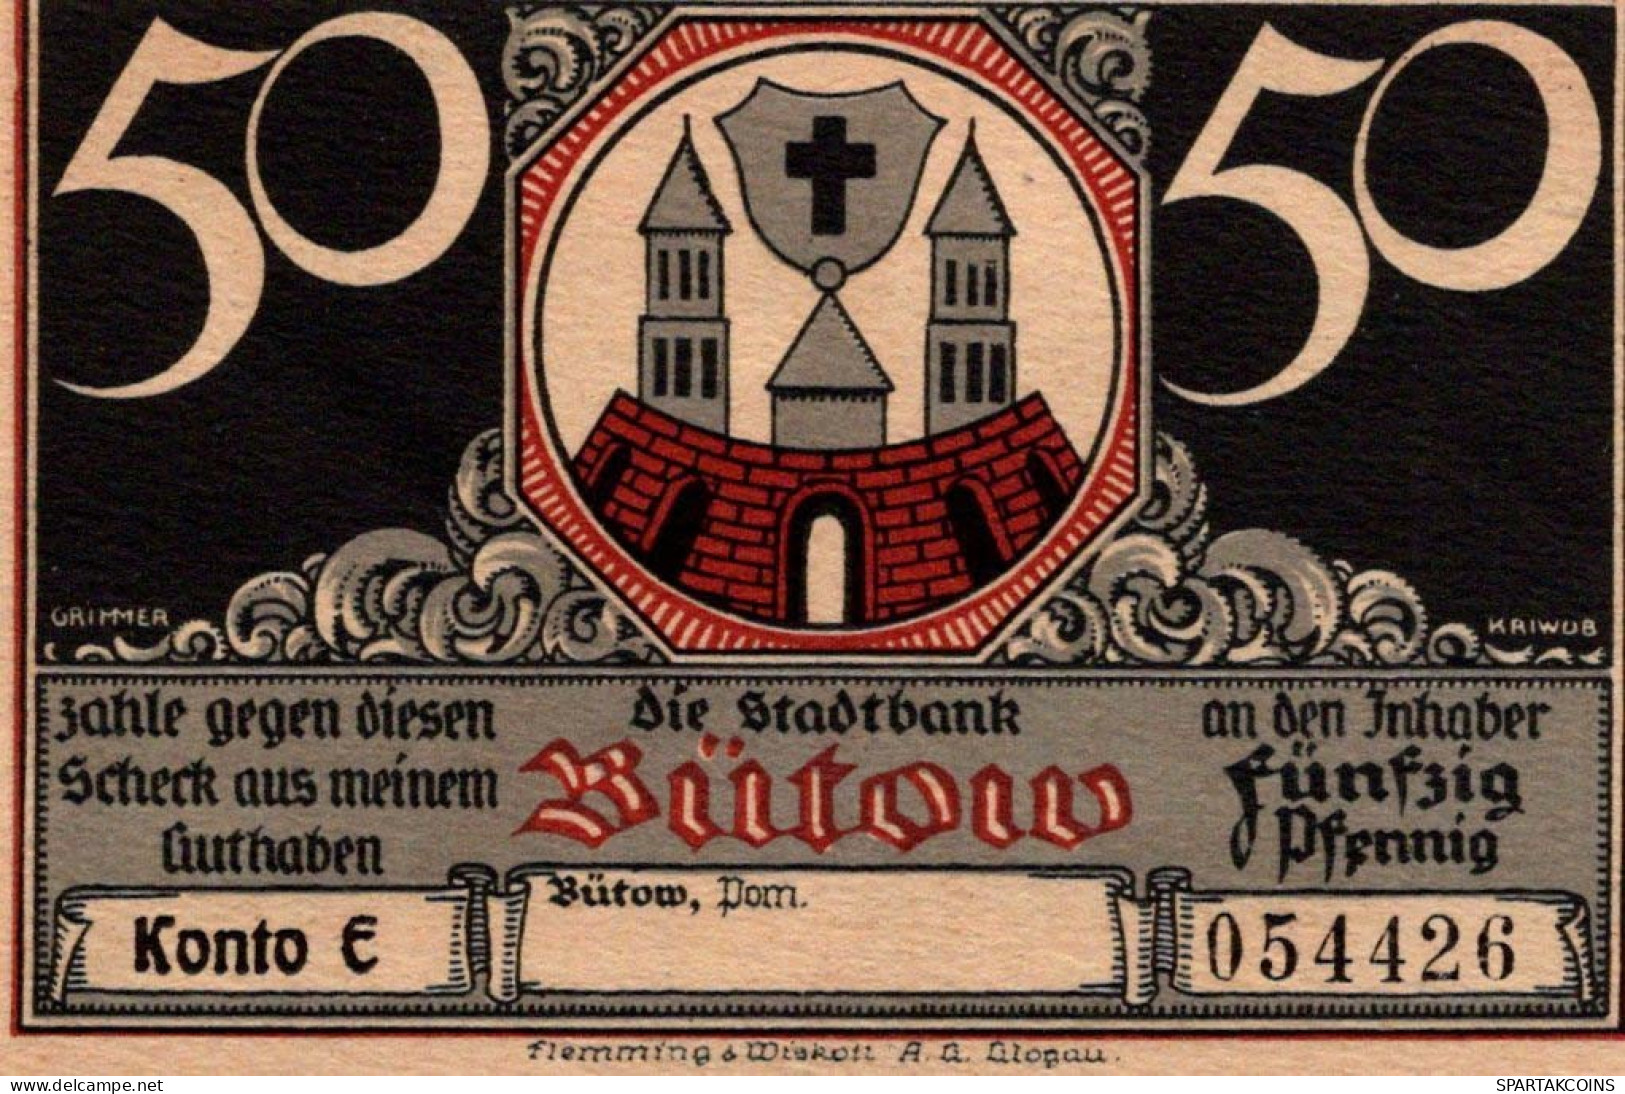 50 PFENNIG 1922 Stadt BÜTOW Pomerania UNC DEUTSCHLAND Notgeld Banknote #PC884 - [11] Local Banknote Issues